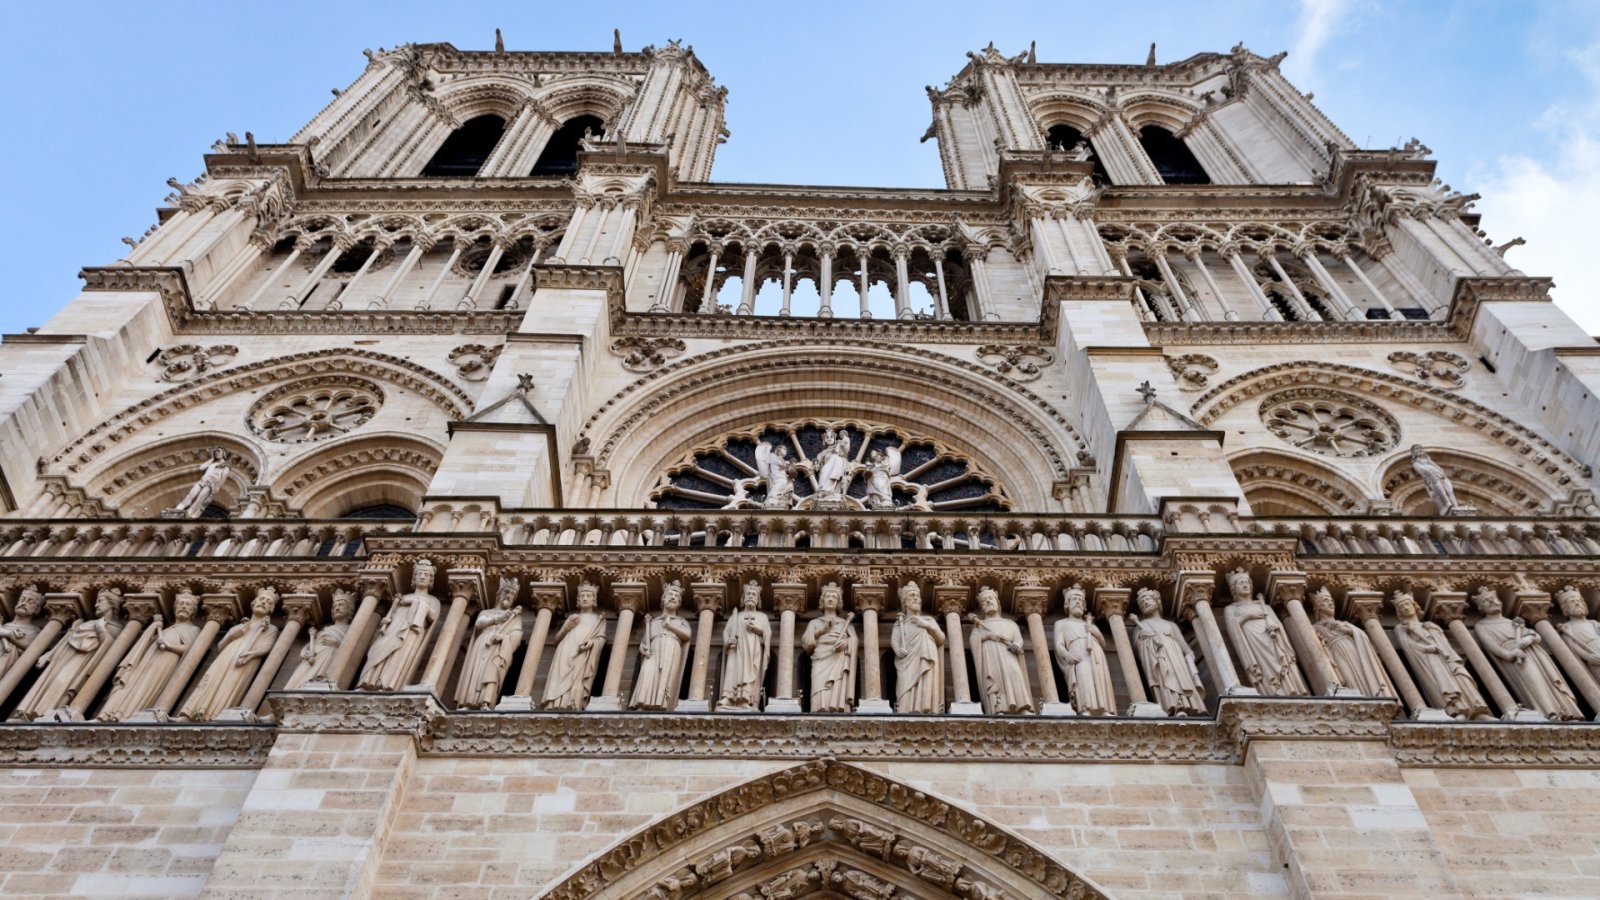 Die Kathedrale Notre Dame enthüllt einen neuen Turm, der von einem goldenen Hahn gekrönt wird